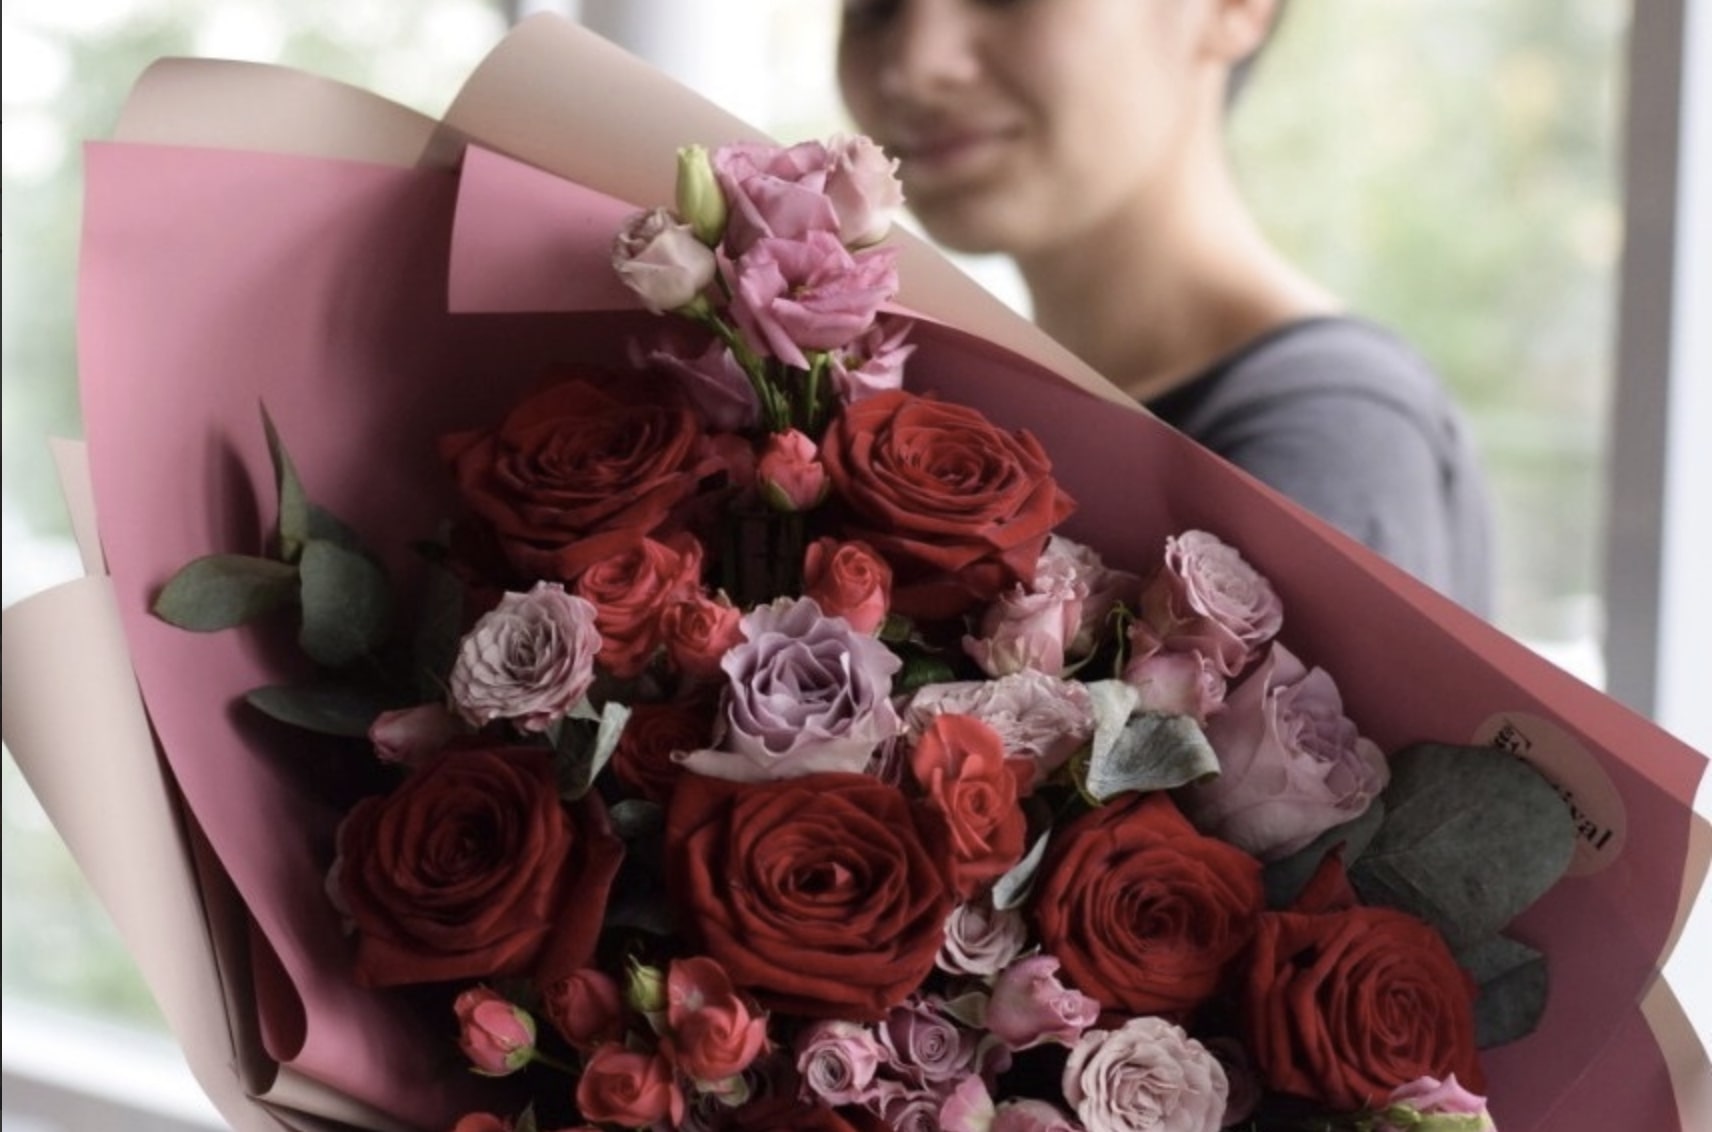 Услуга доставки цветов в Казани: преимущества и особенности